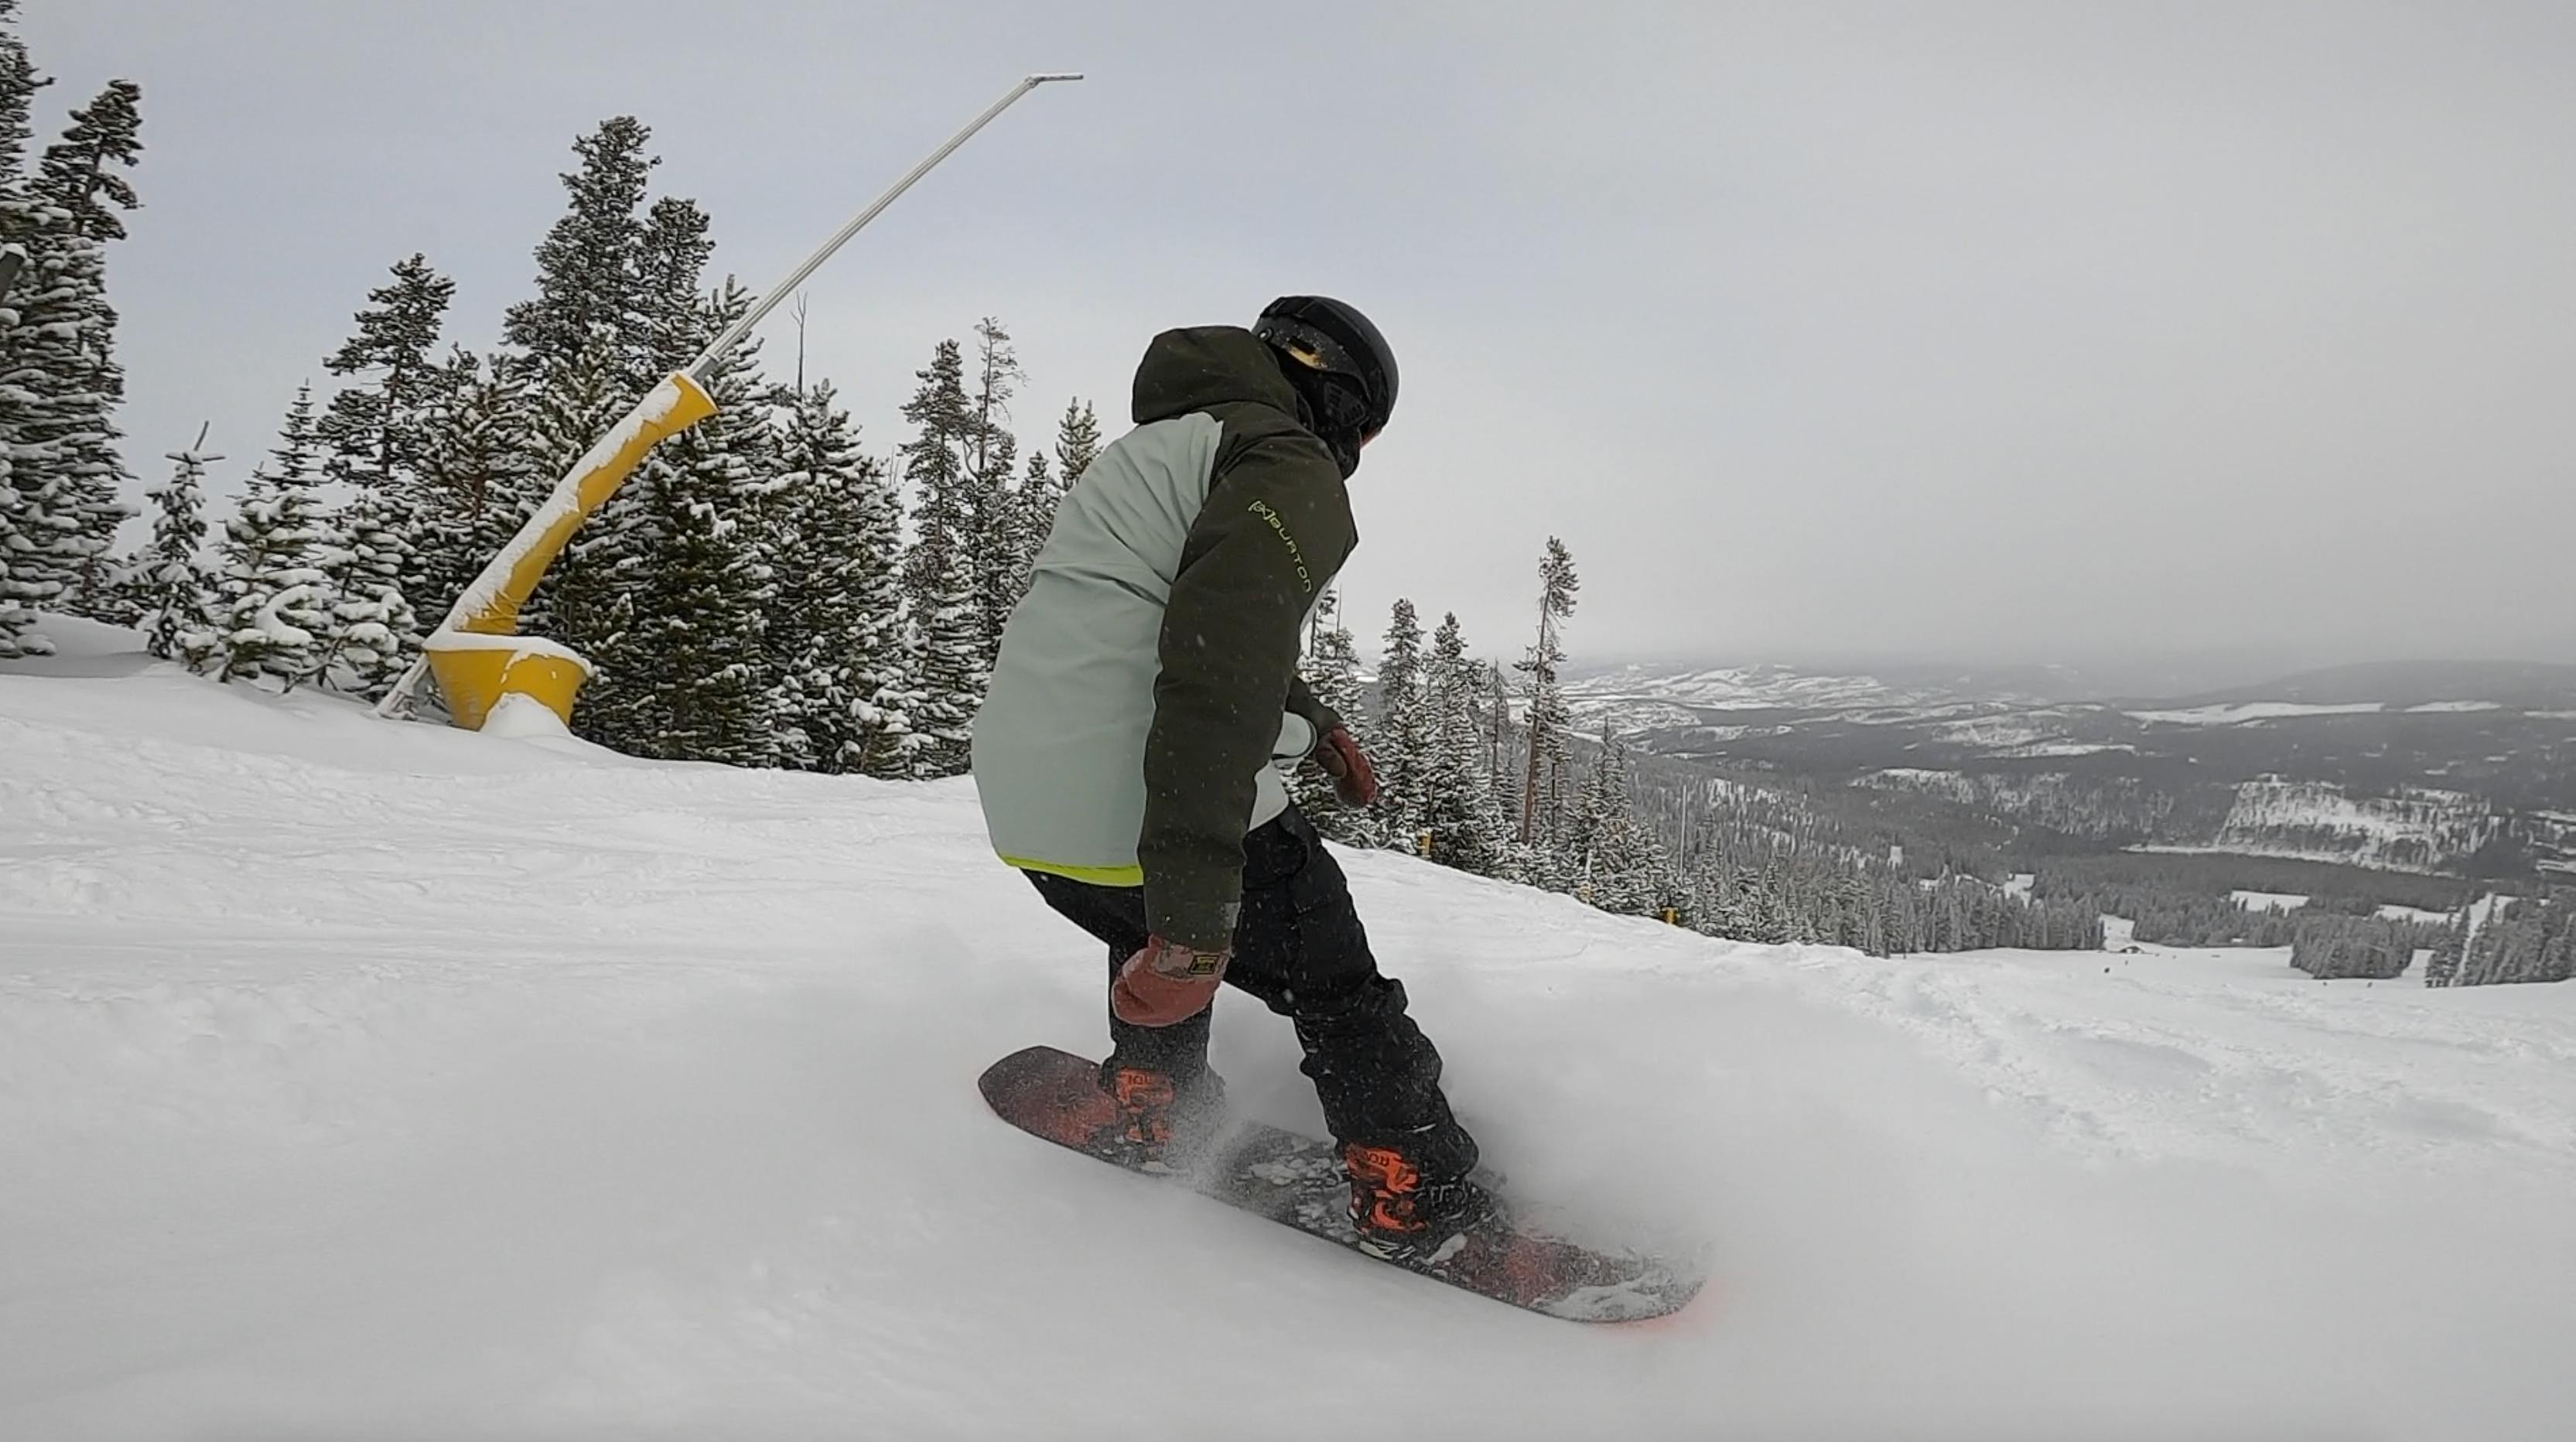 A snowboarder executes a stop